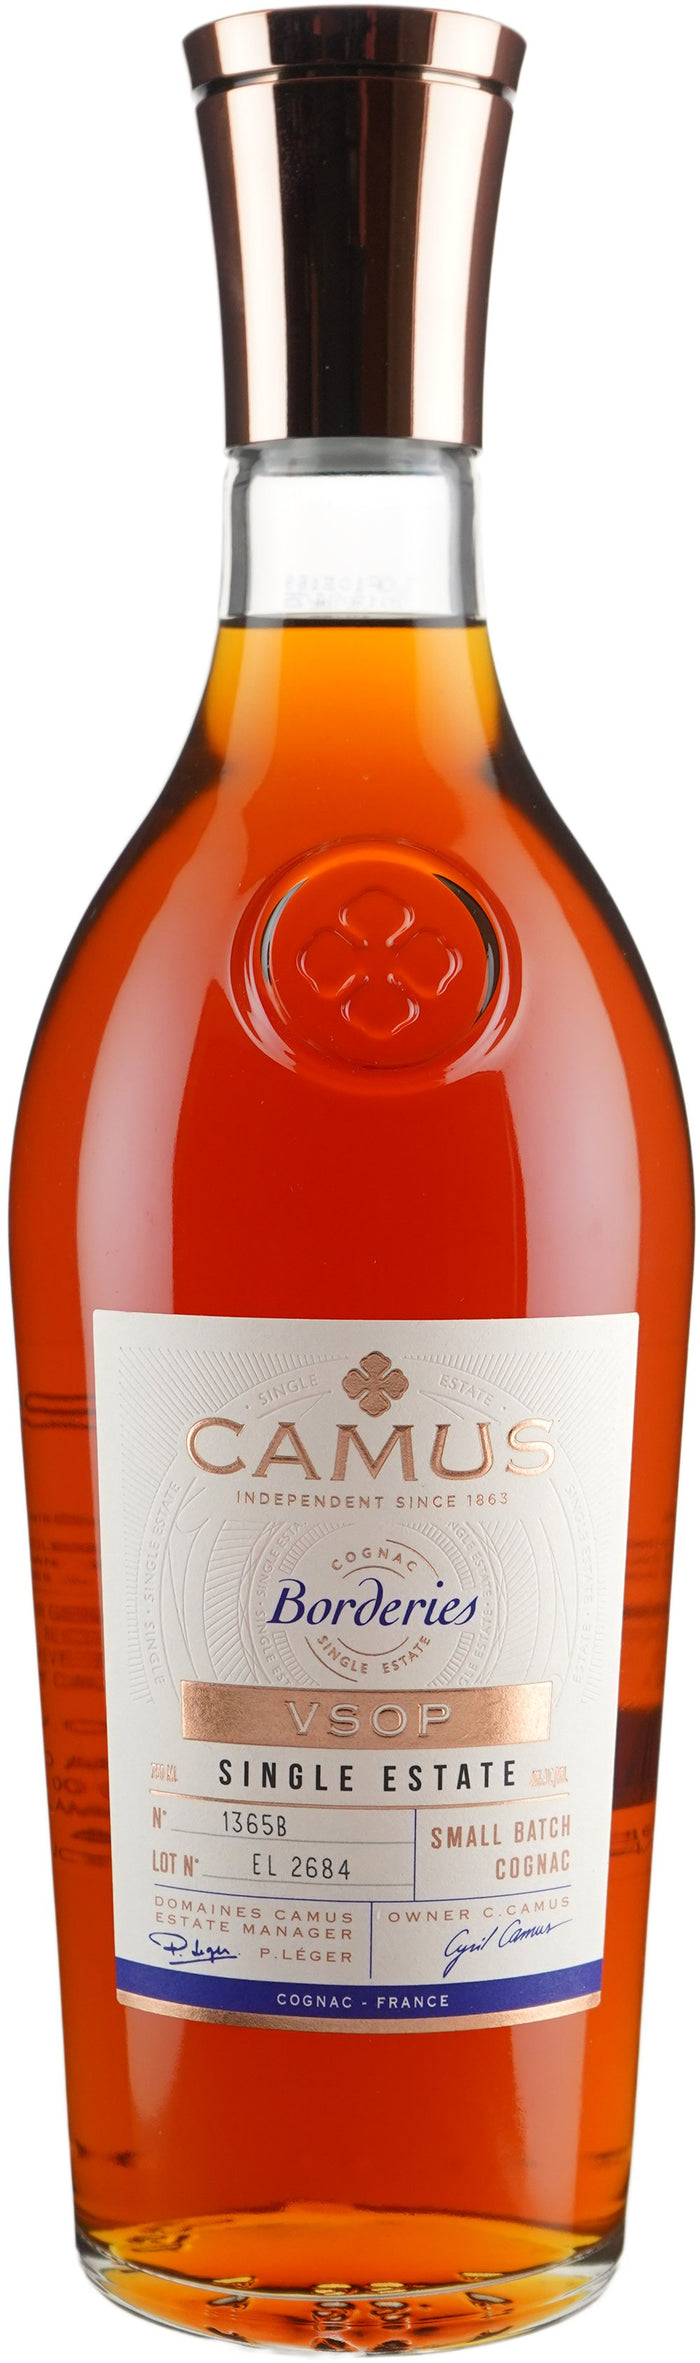 Camus VSOP Borderies Cognac